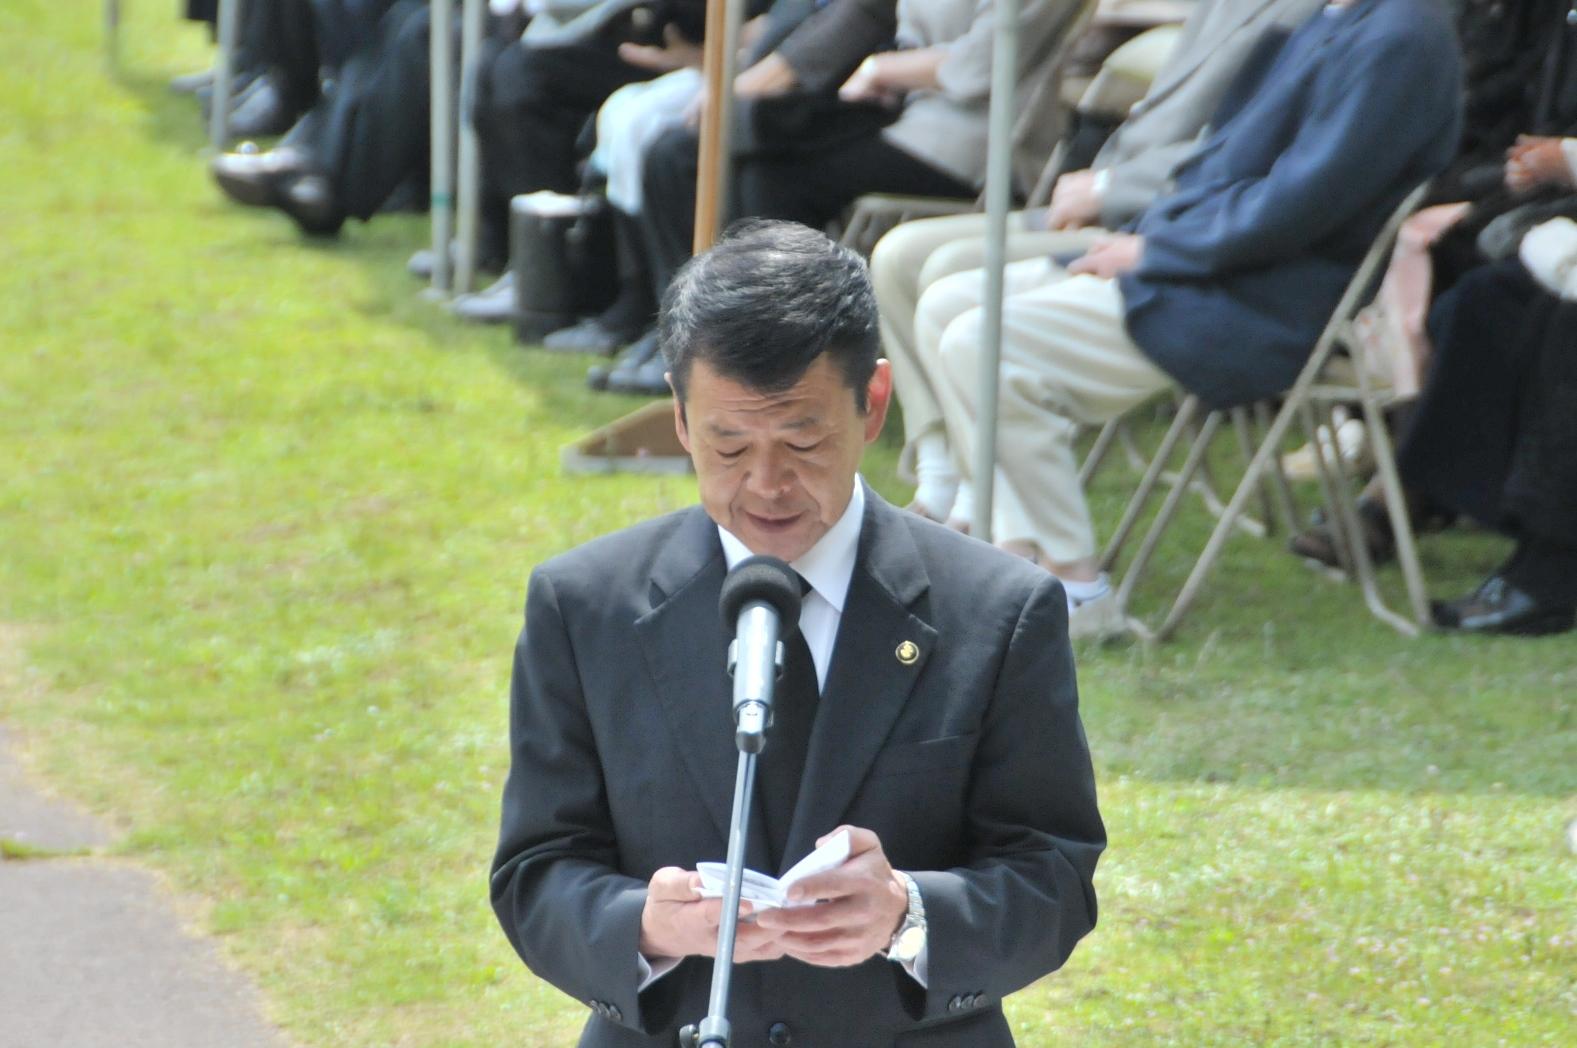 2017年5月29日マイクスタンドに立ちメモを読む市長の写真